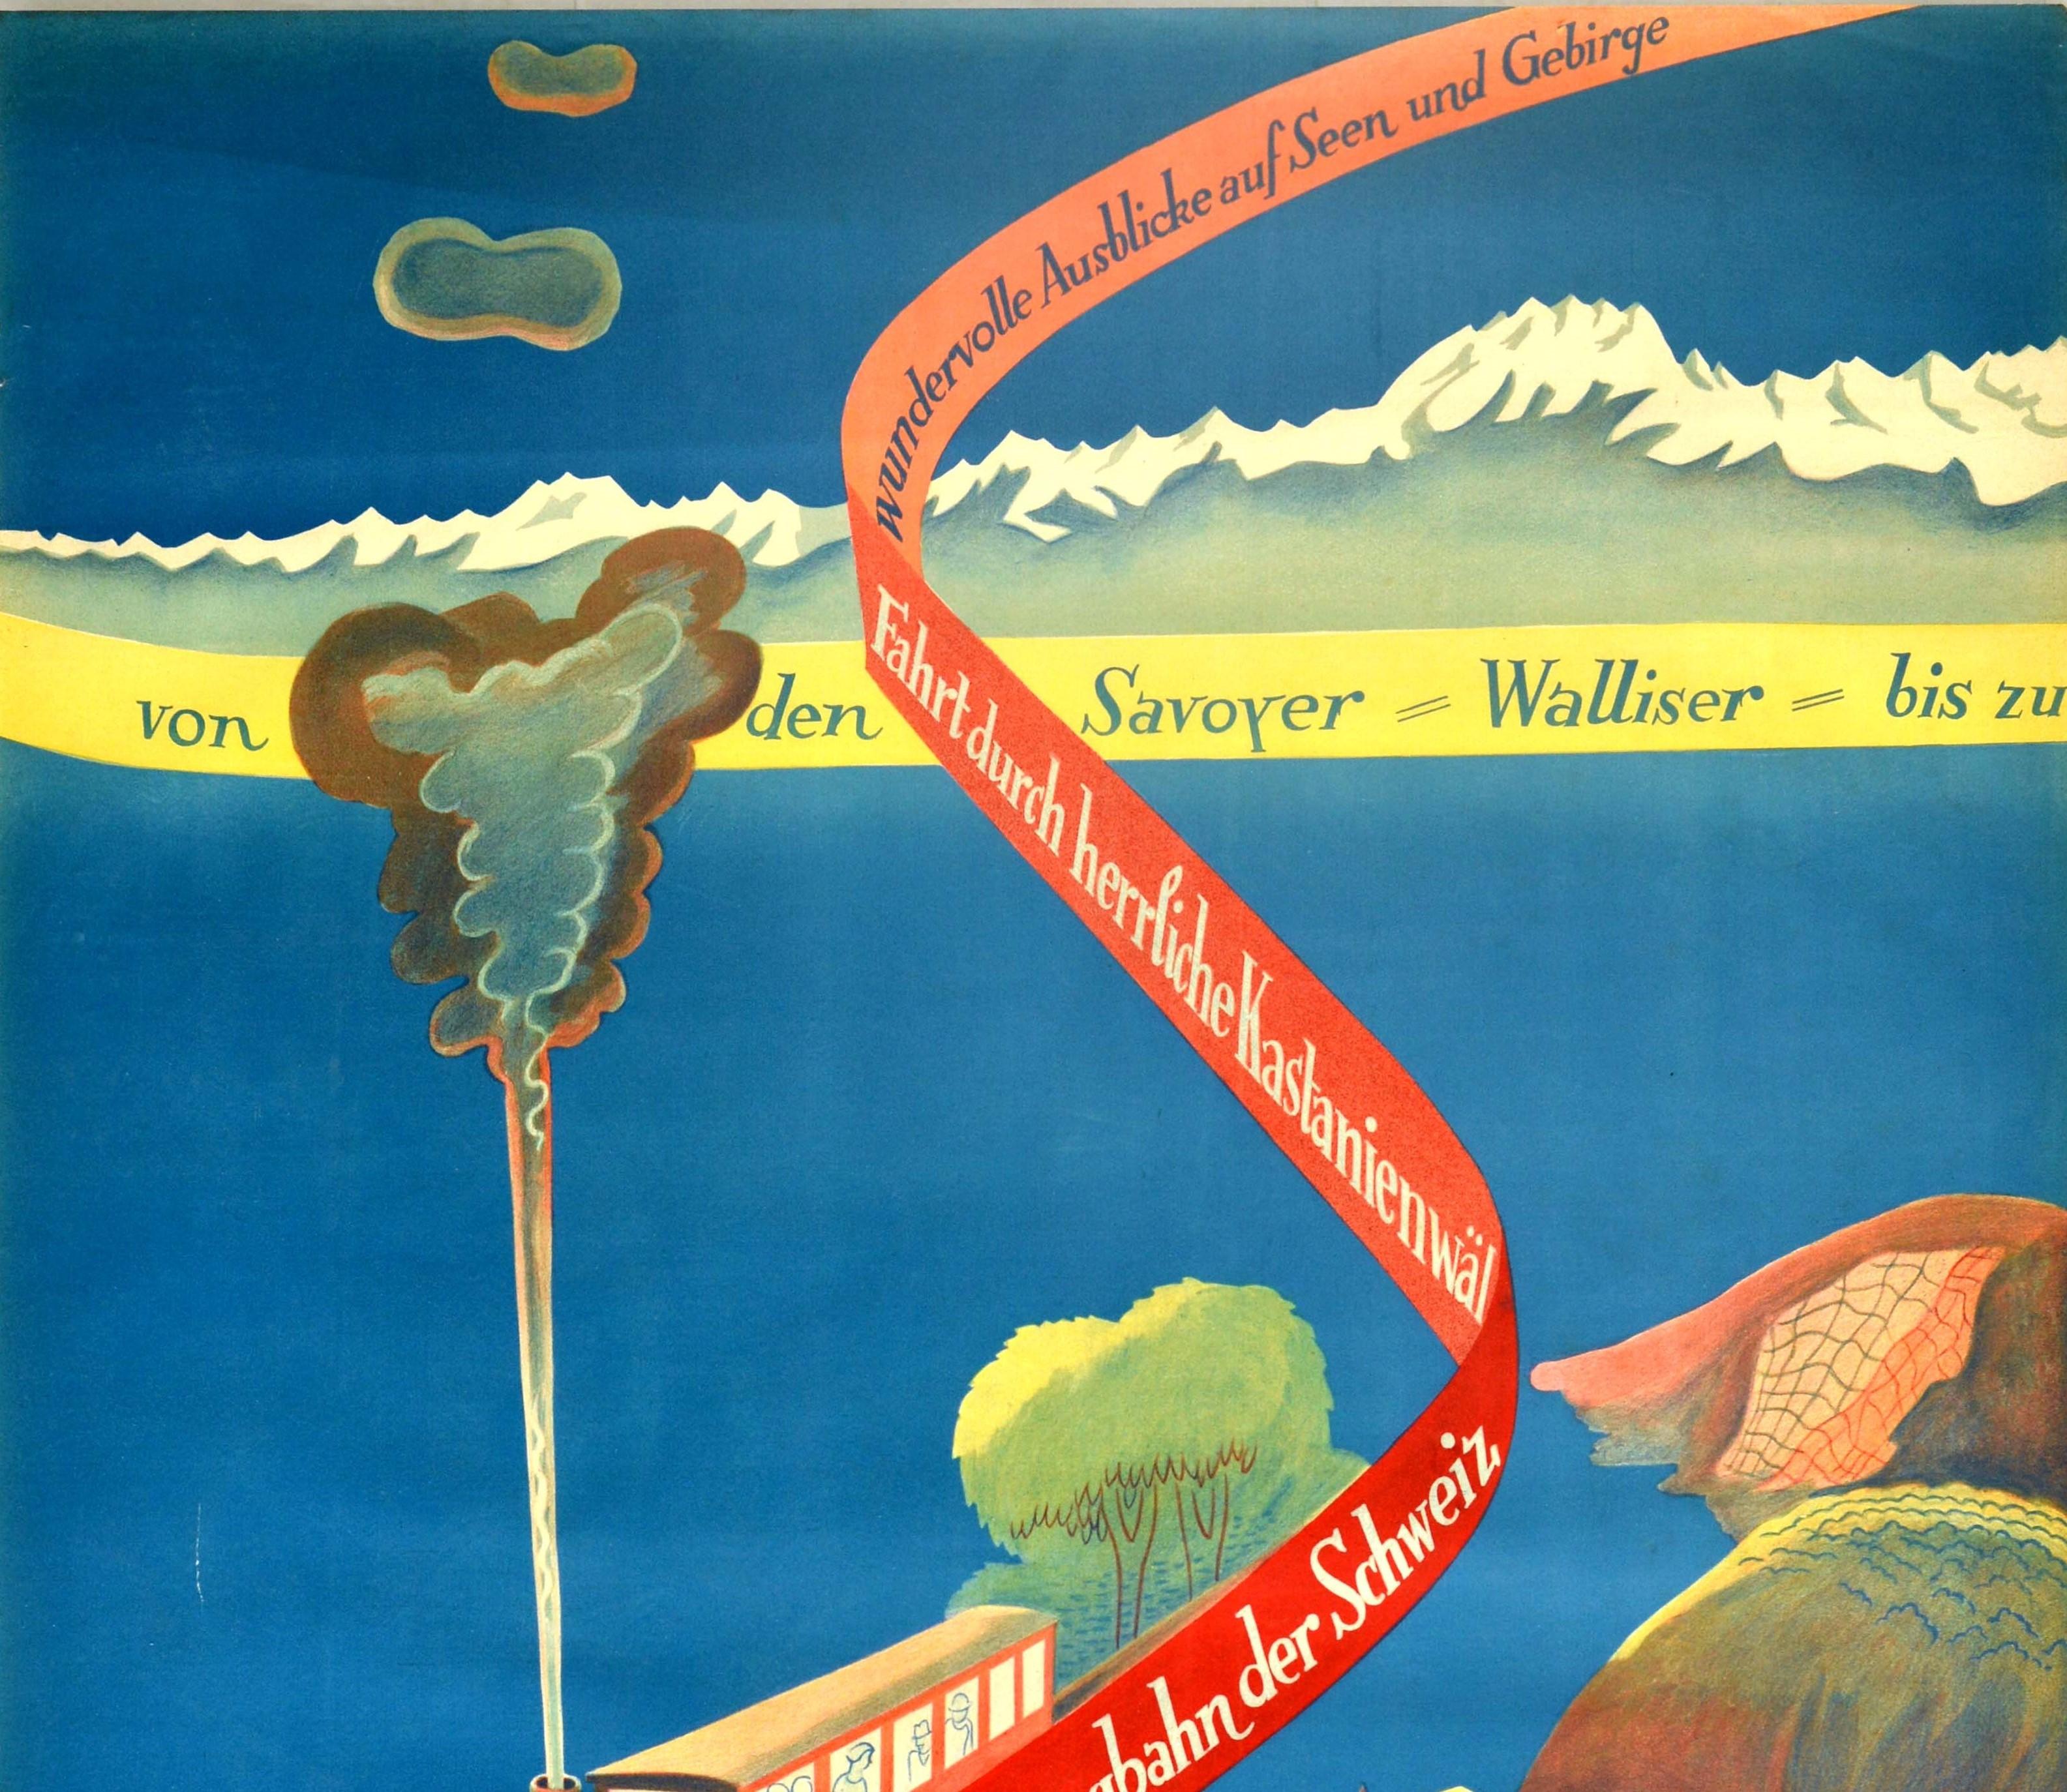 Original vintage railway travel poster for the Monte Generoso railway (opened 1890) - Generoso die zweitlangste Bergbahn der Schweiz fahrt durch herrliche Kastanienwahl wunderwolle ausblicke auf Seen und Gebirge von den Savoyer Walliser bis zu Blick